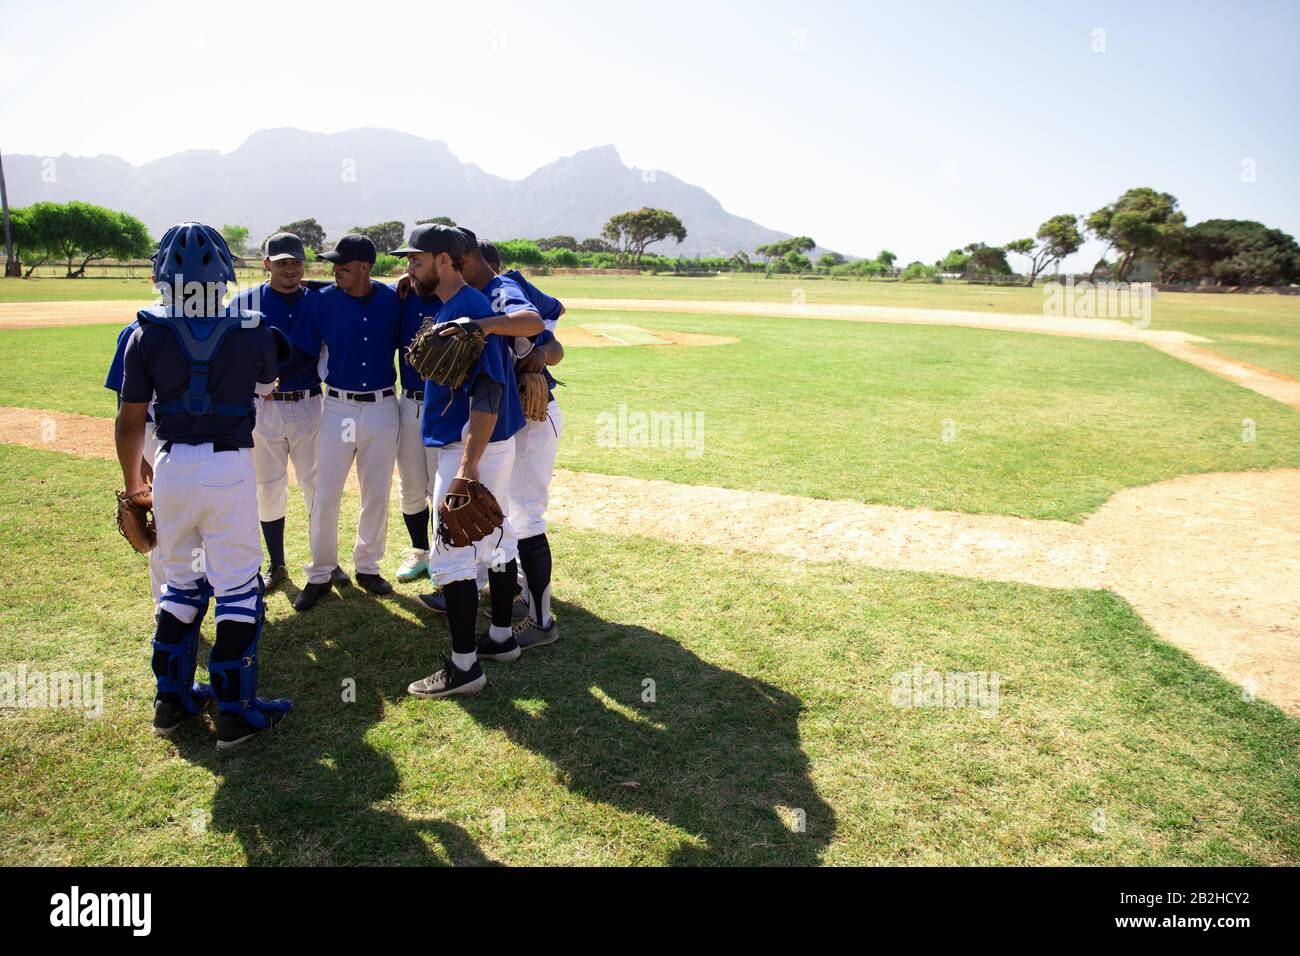 Joueurs de base-ball préparant le match Banque D'Images